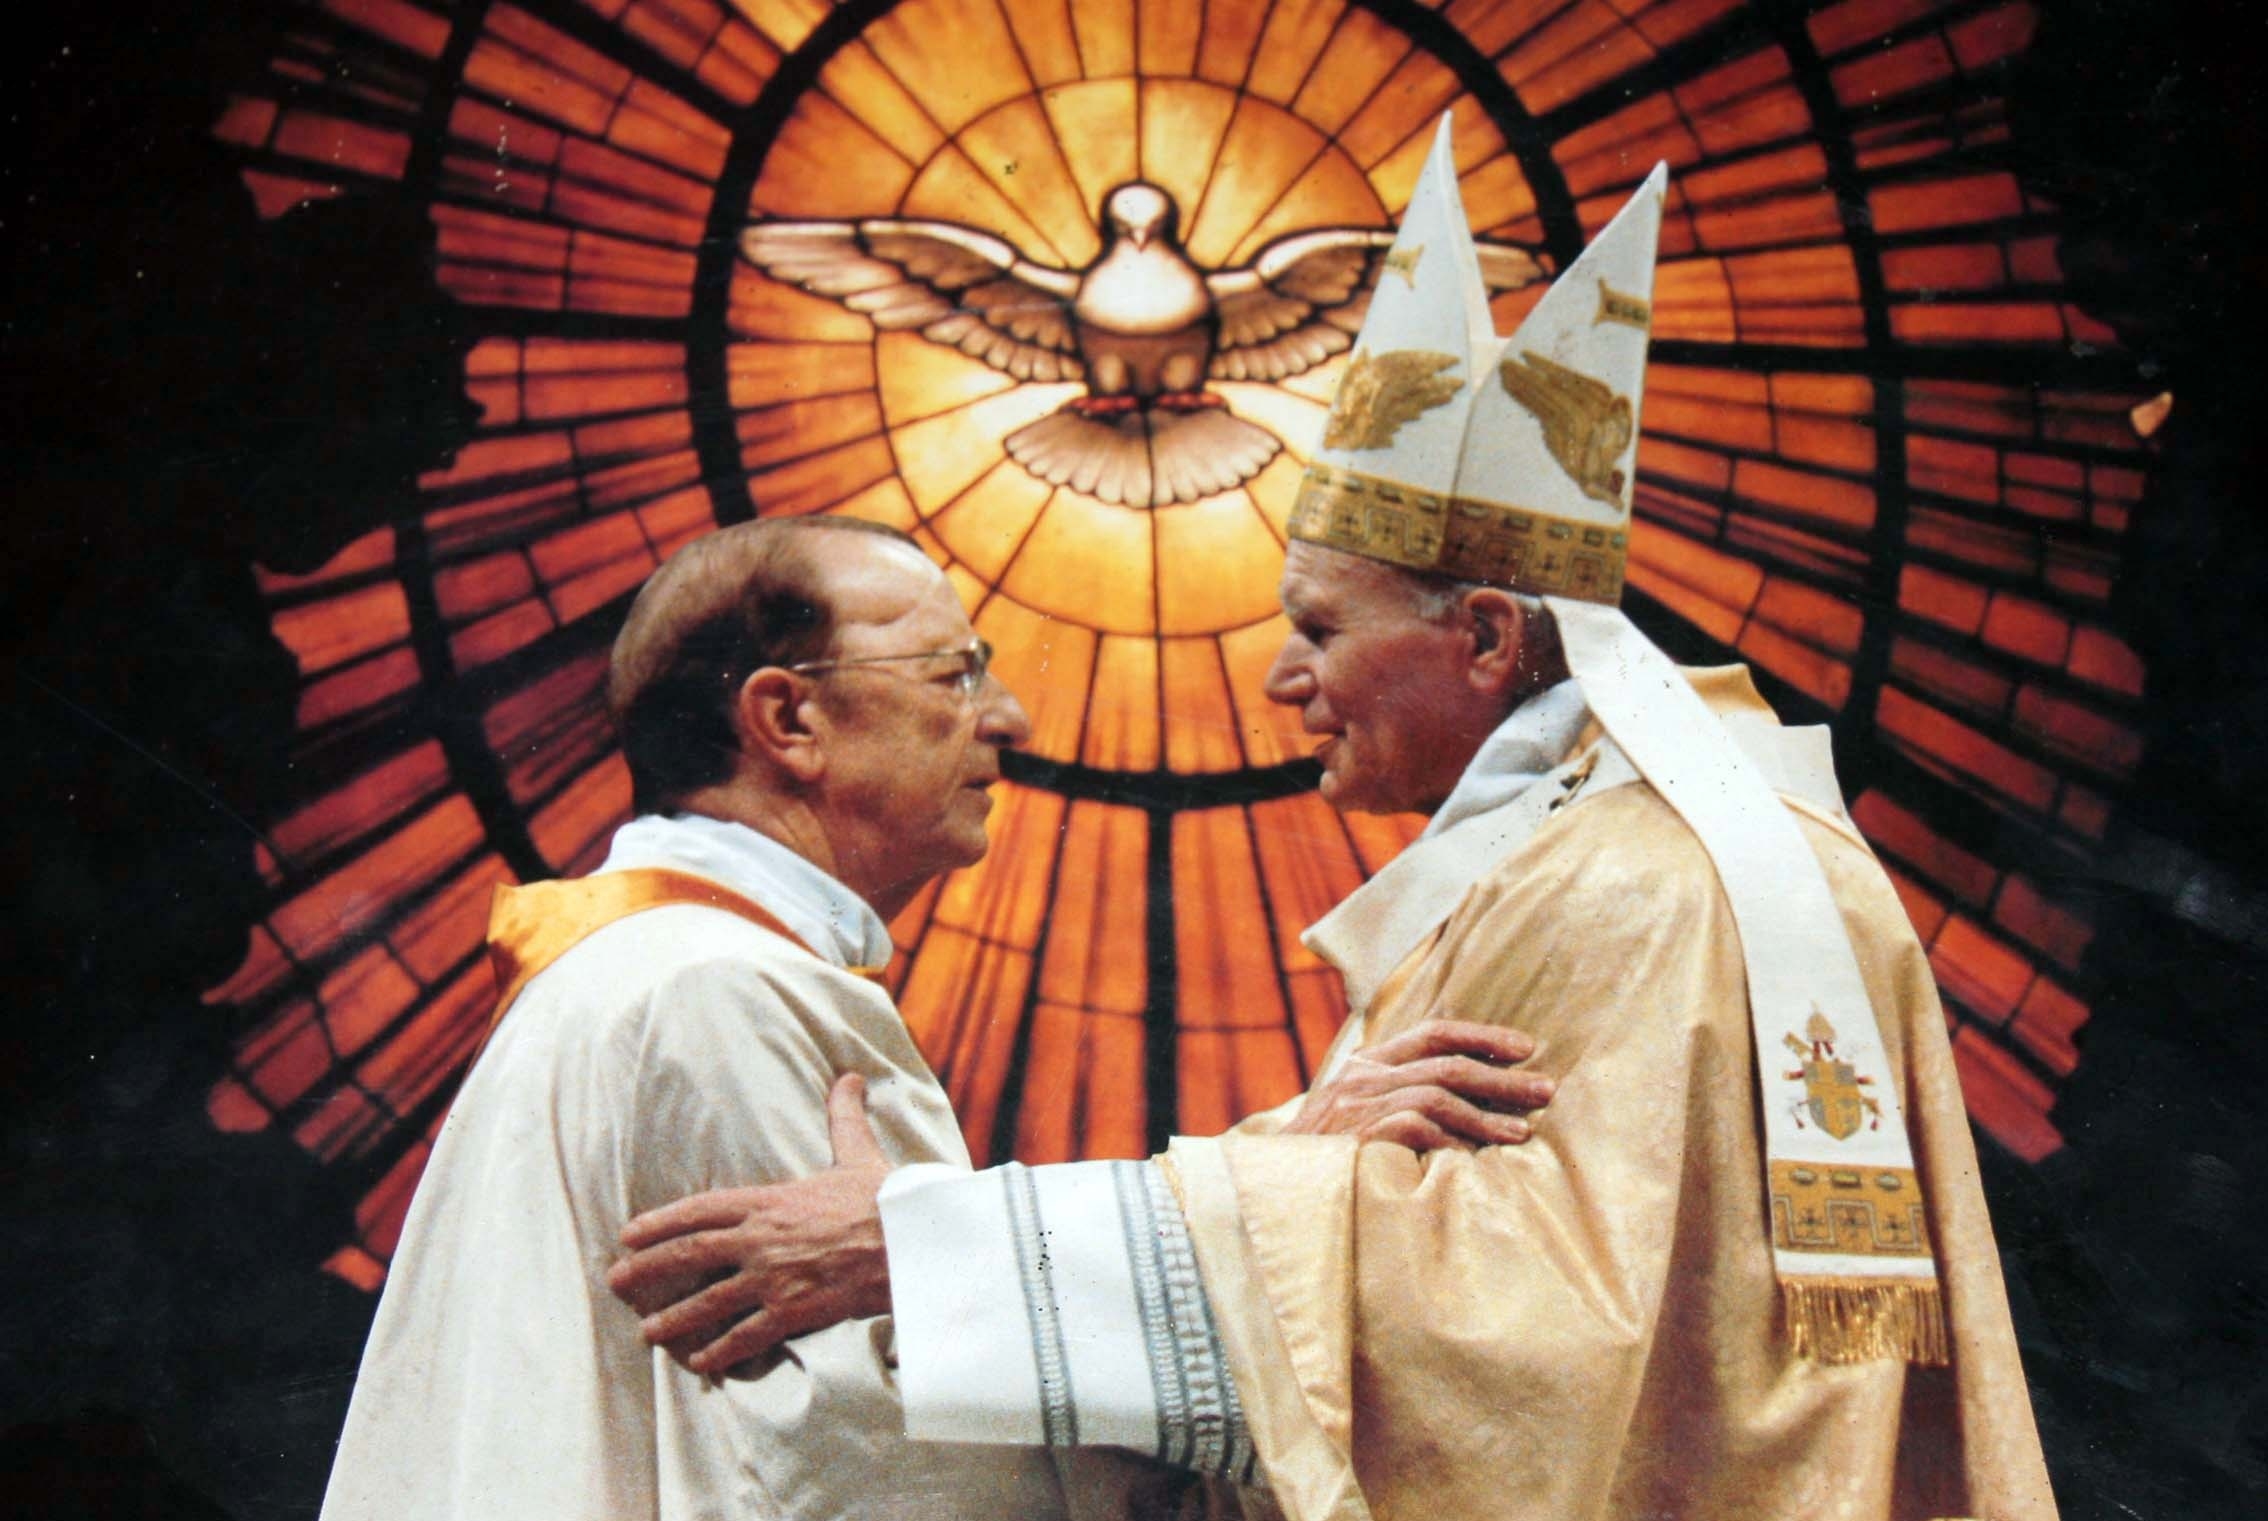 II. János Pál és Marcial Maciel, a Krisztus Légiója alapítója, a legalább 60 kiskorút molesztáló szexuális ragadozó, akinek tetteiről évtizedek óta tudott az egyház. Benedek pápa végül leváltotta, de a papi rendből nem zárta ki